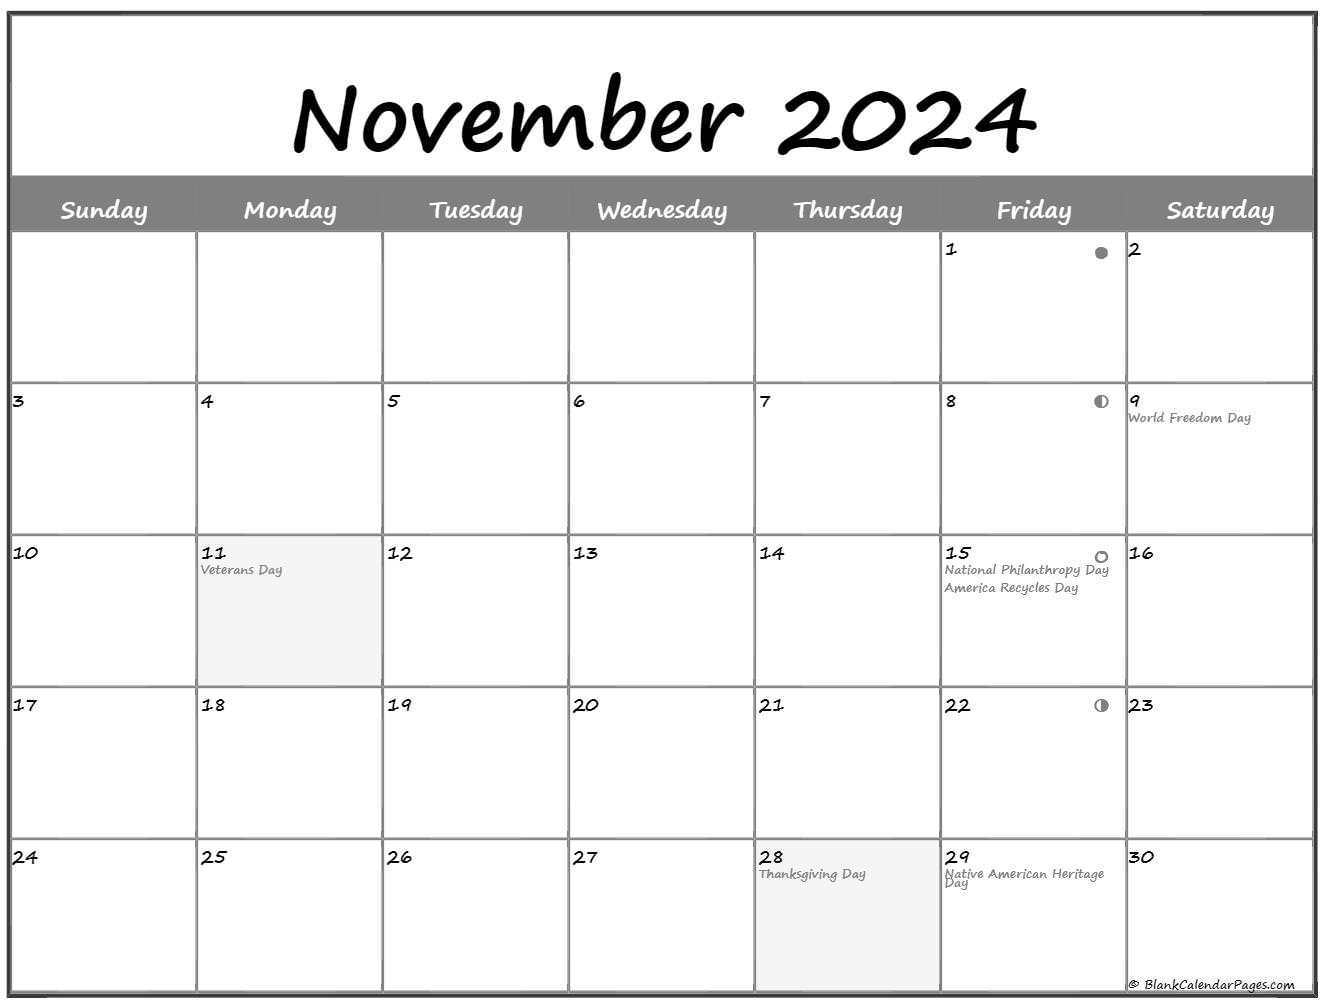 November 2024 Lunar Calendar | Moon Phase Calendar